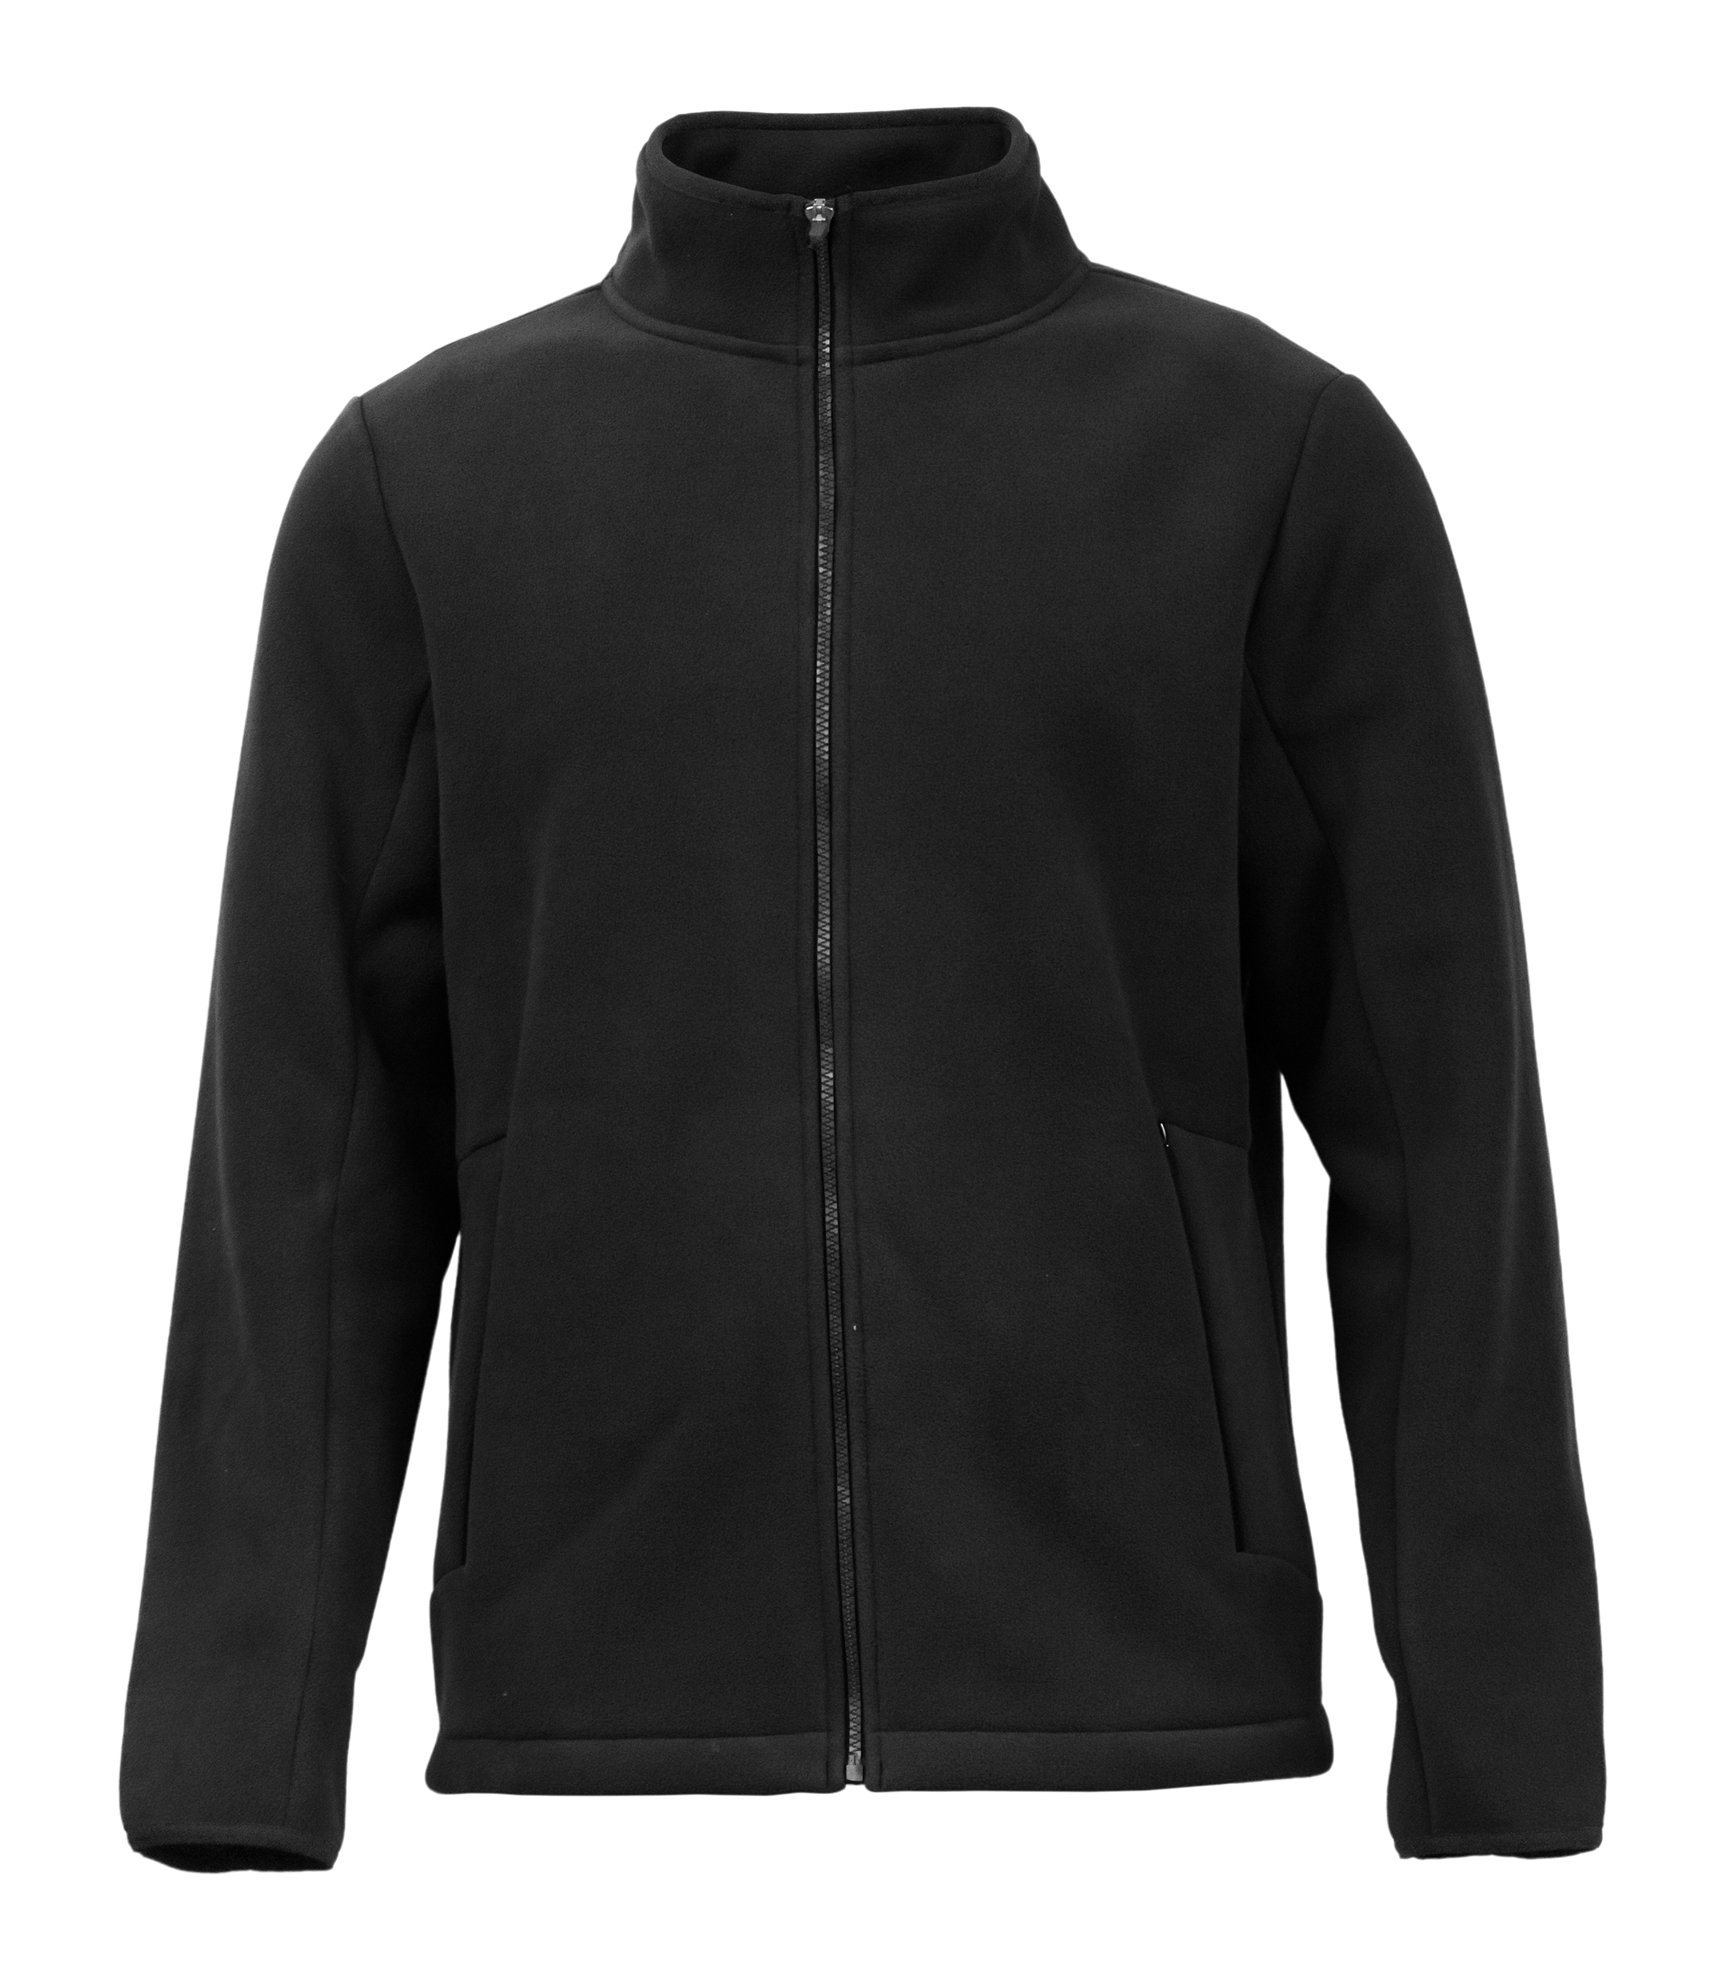 BAW Athletic Wear BF24 - Adult Bonded Fleece Jacket